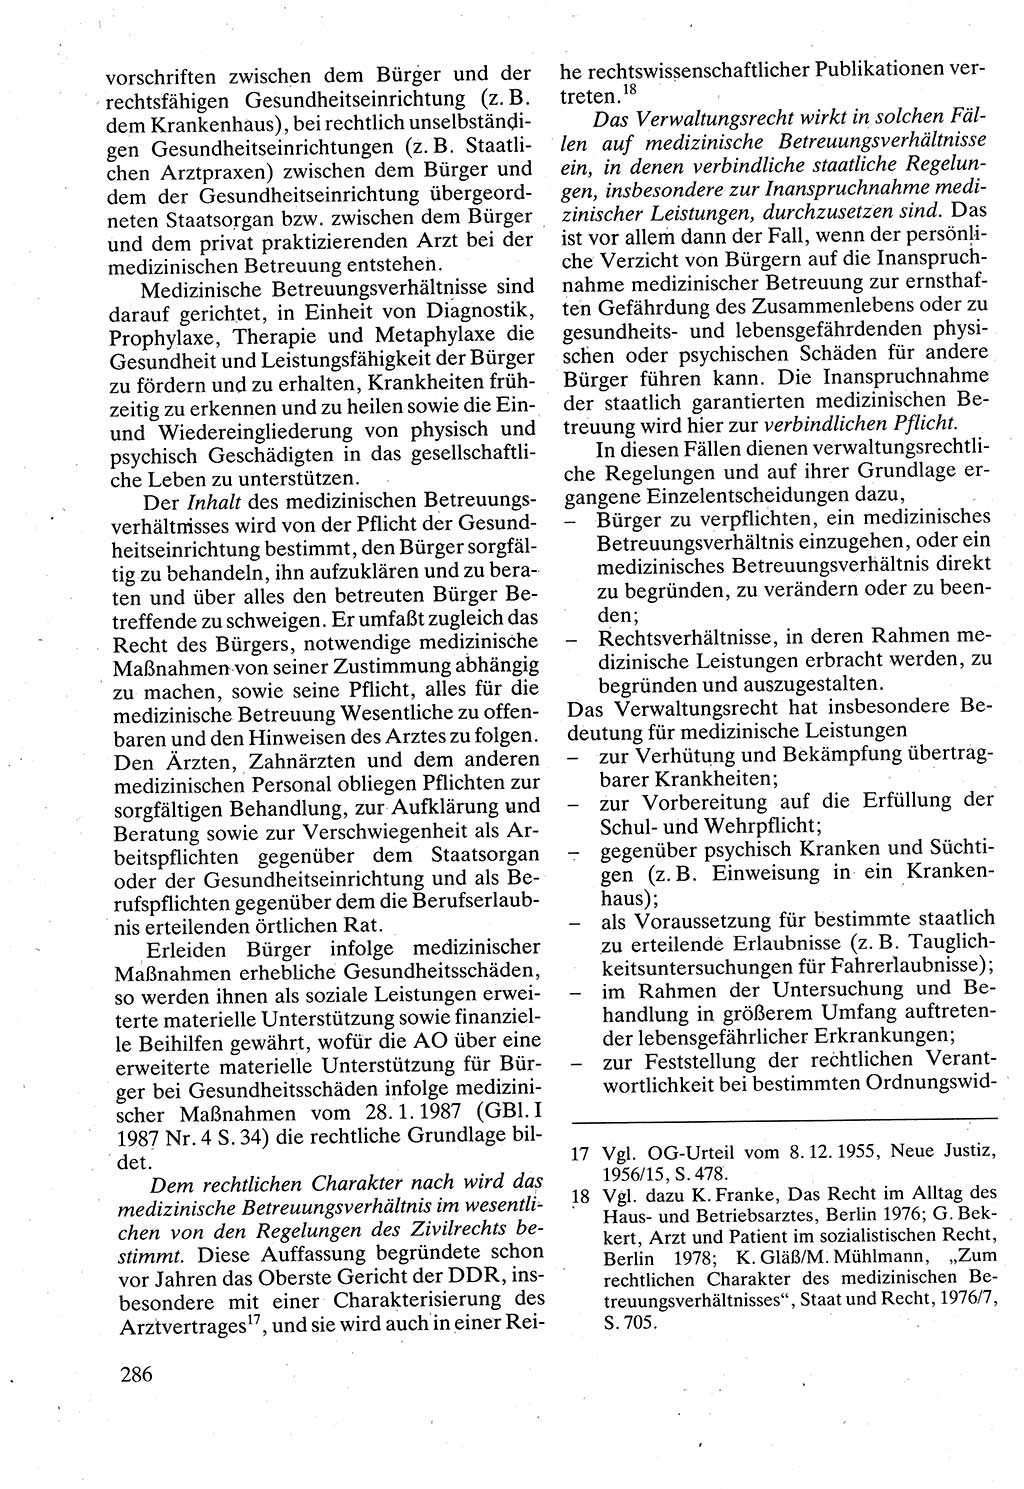 Verwaltungsrecht [Deutsche Demokratische Republik (DDR)], Lehrbuch 1988, Seite 286 (Verw.-R. DDR Lb. 1988, S. 286)